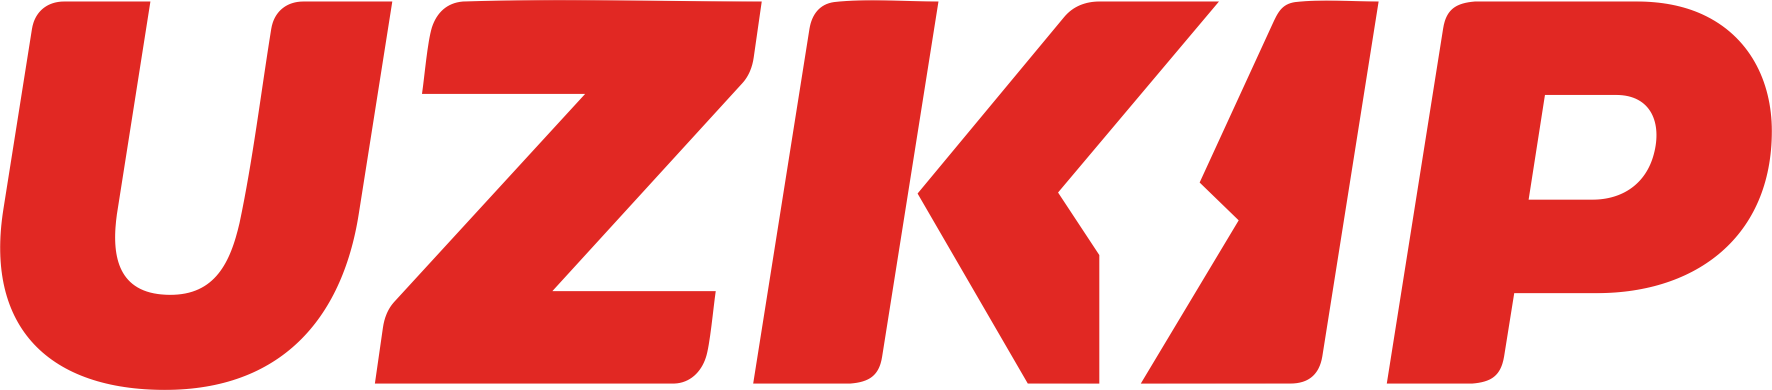 UZKIP - Контрольно-измерительные приборы и автоматика.